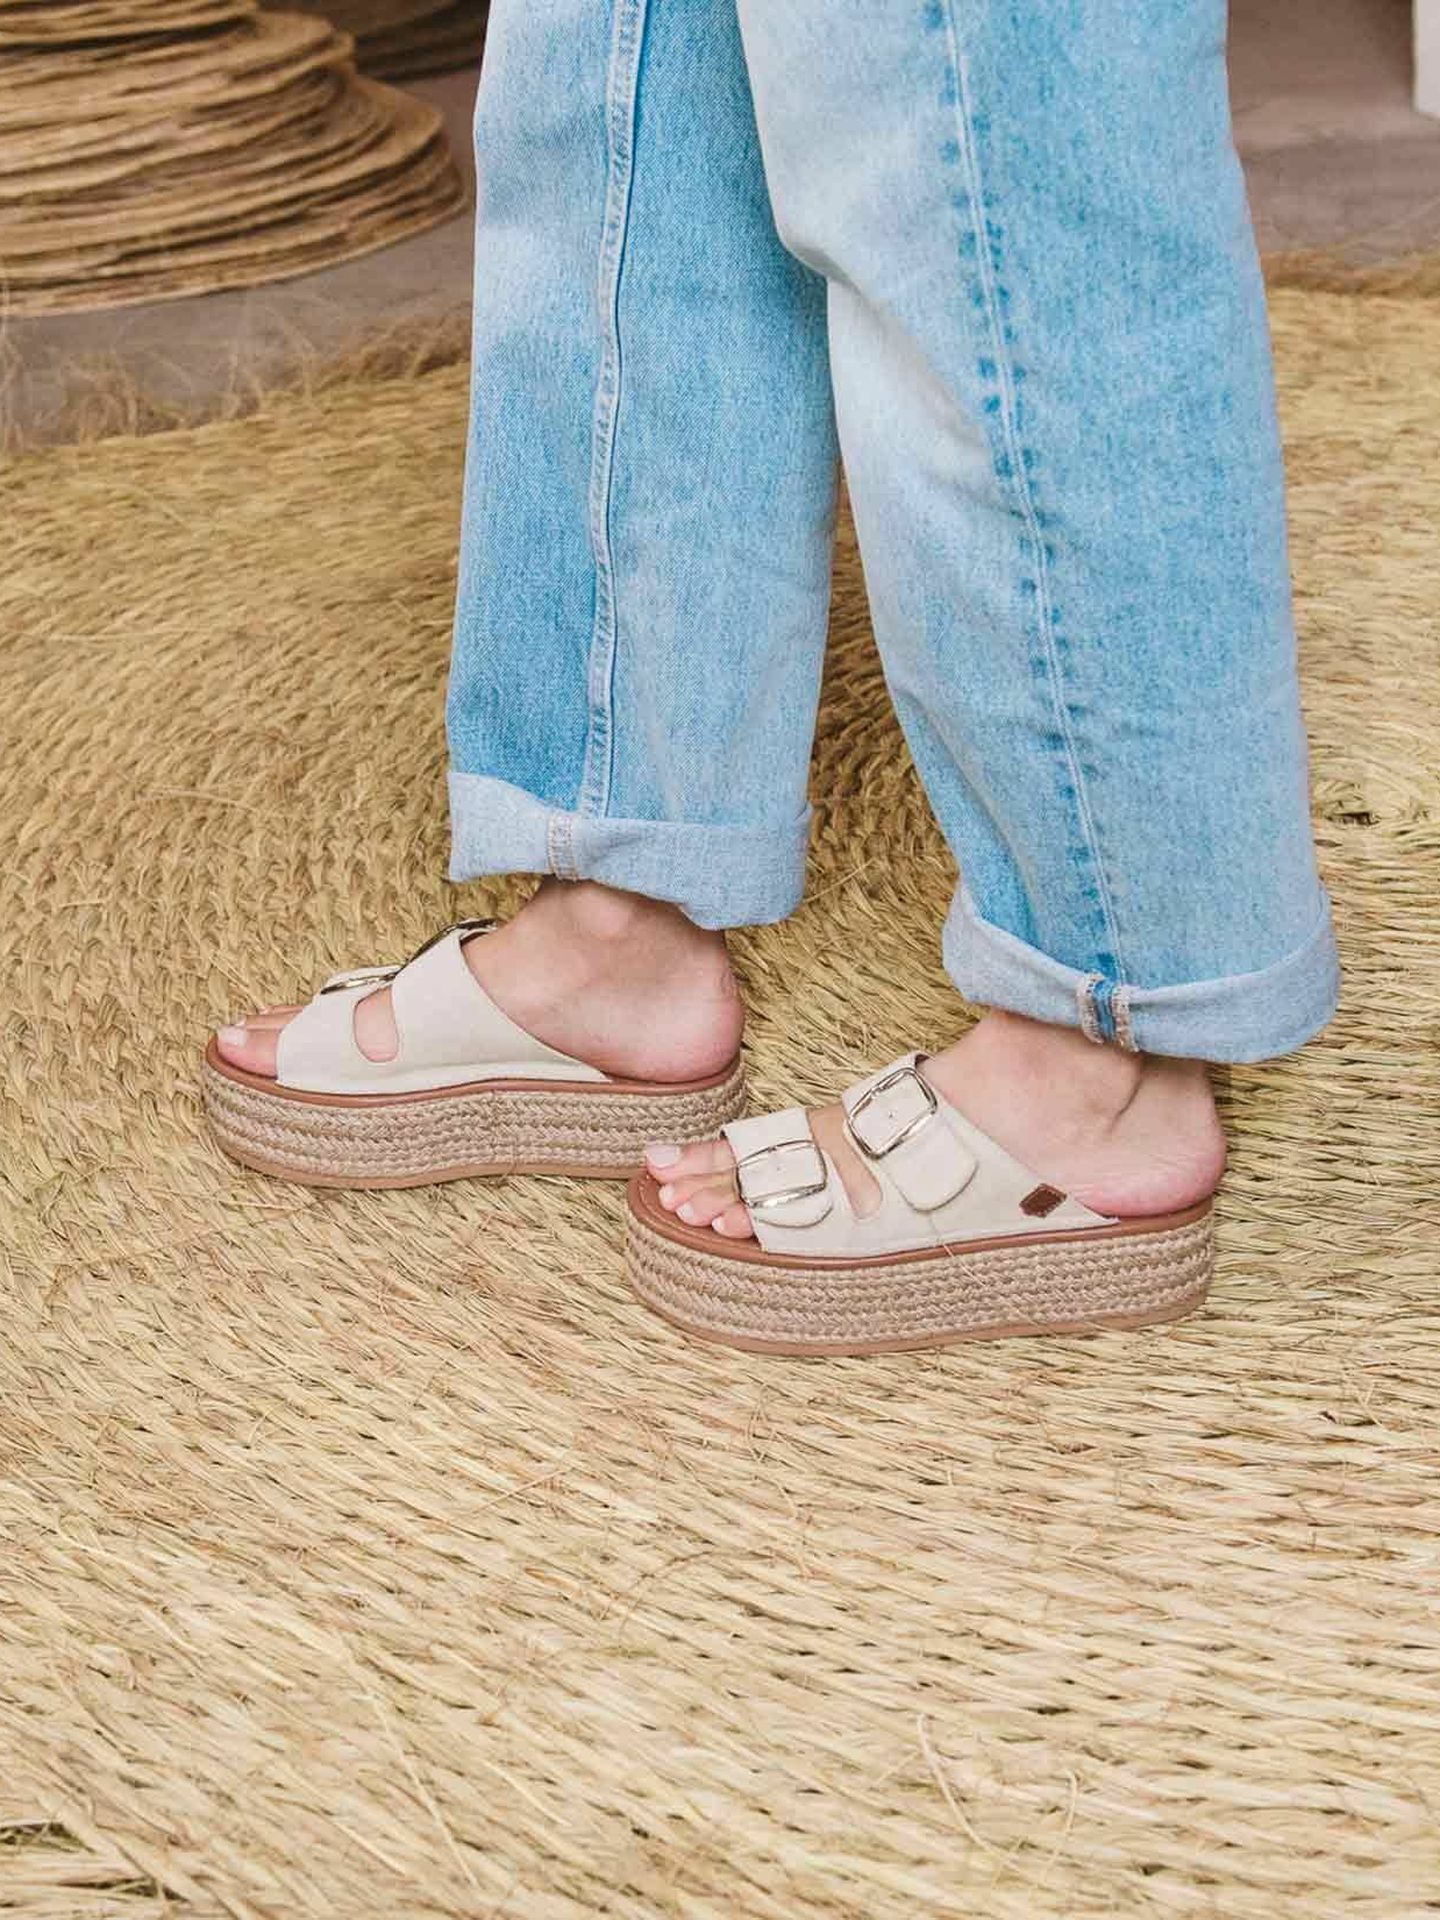 Las sandalias de Popa que tiene Sara Carbonero. (Cortesía)